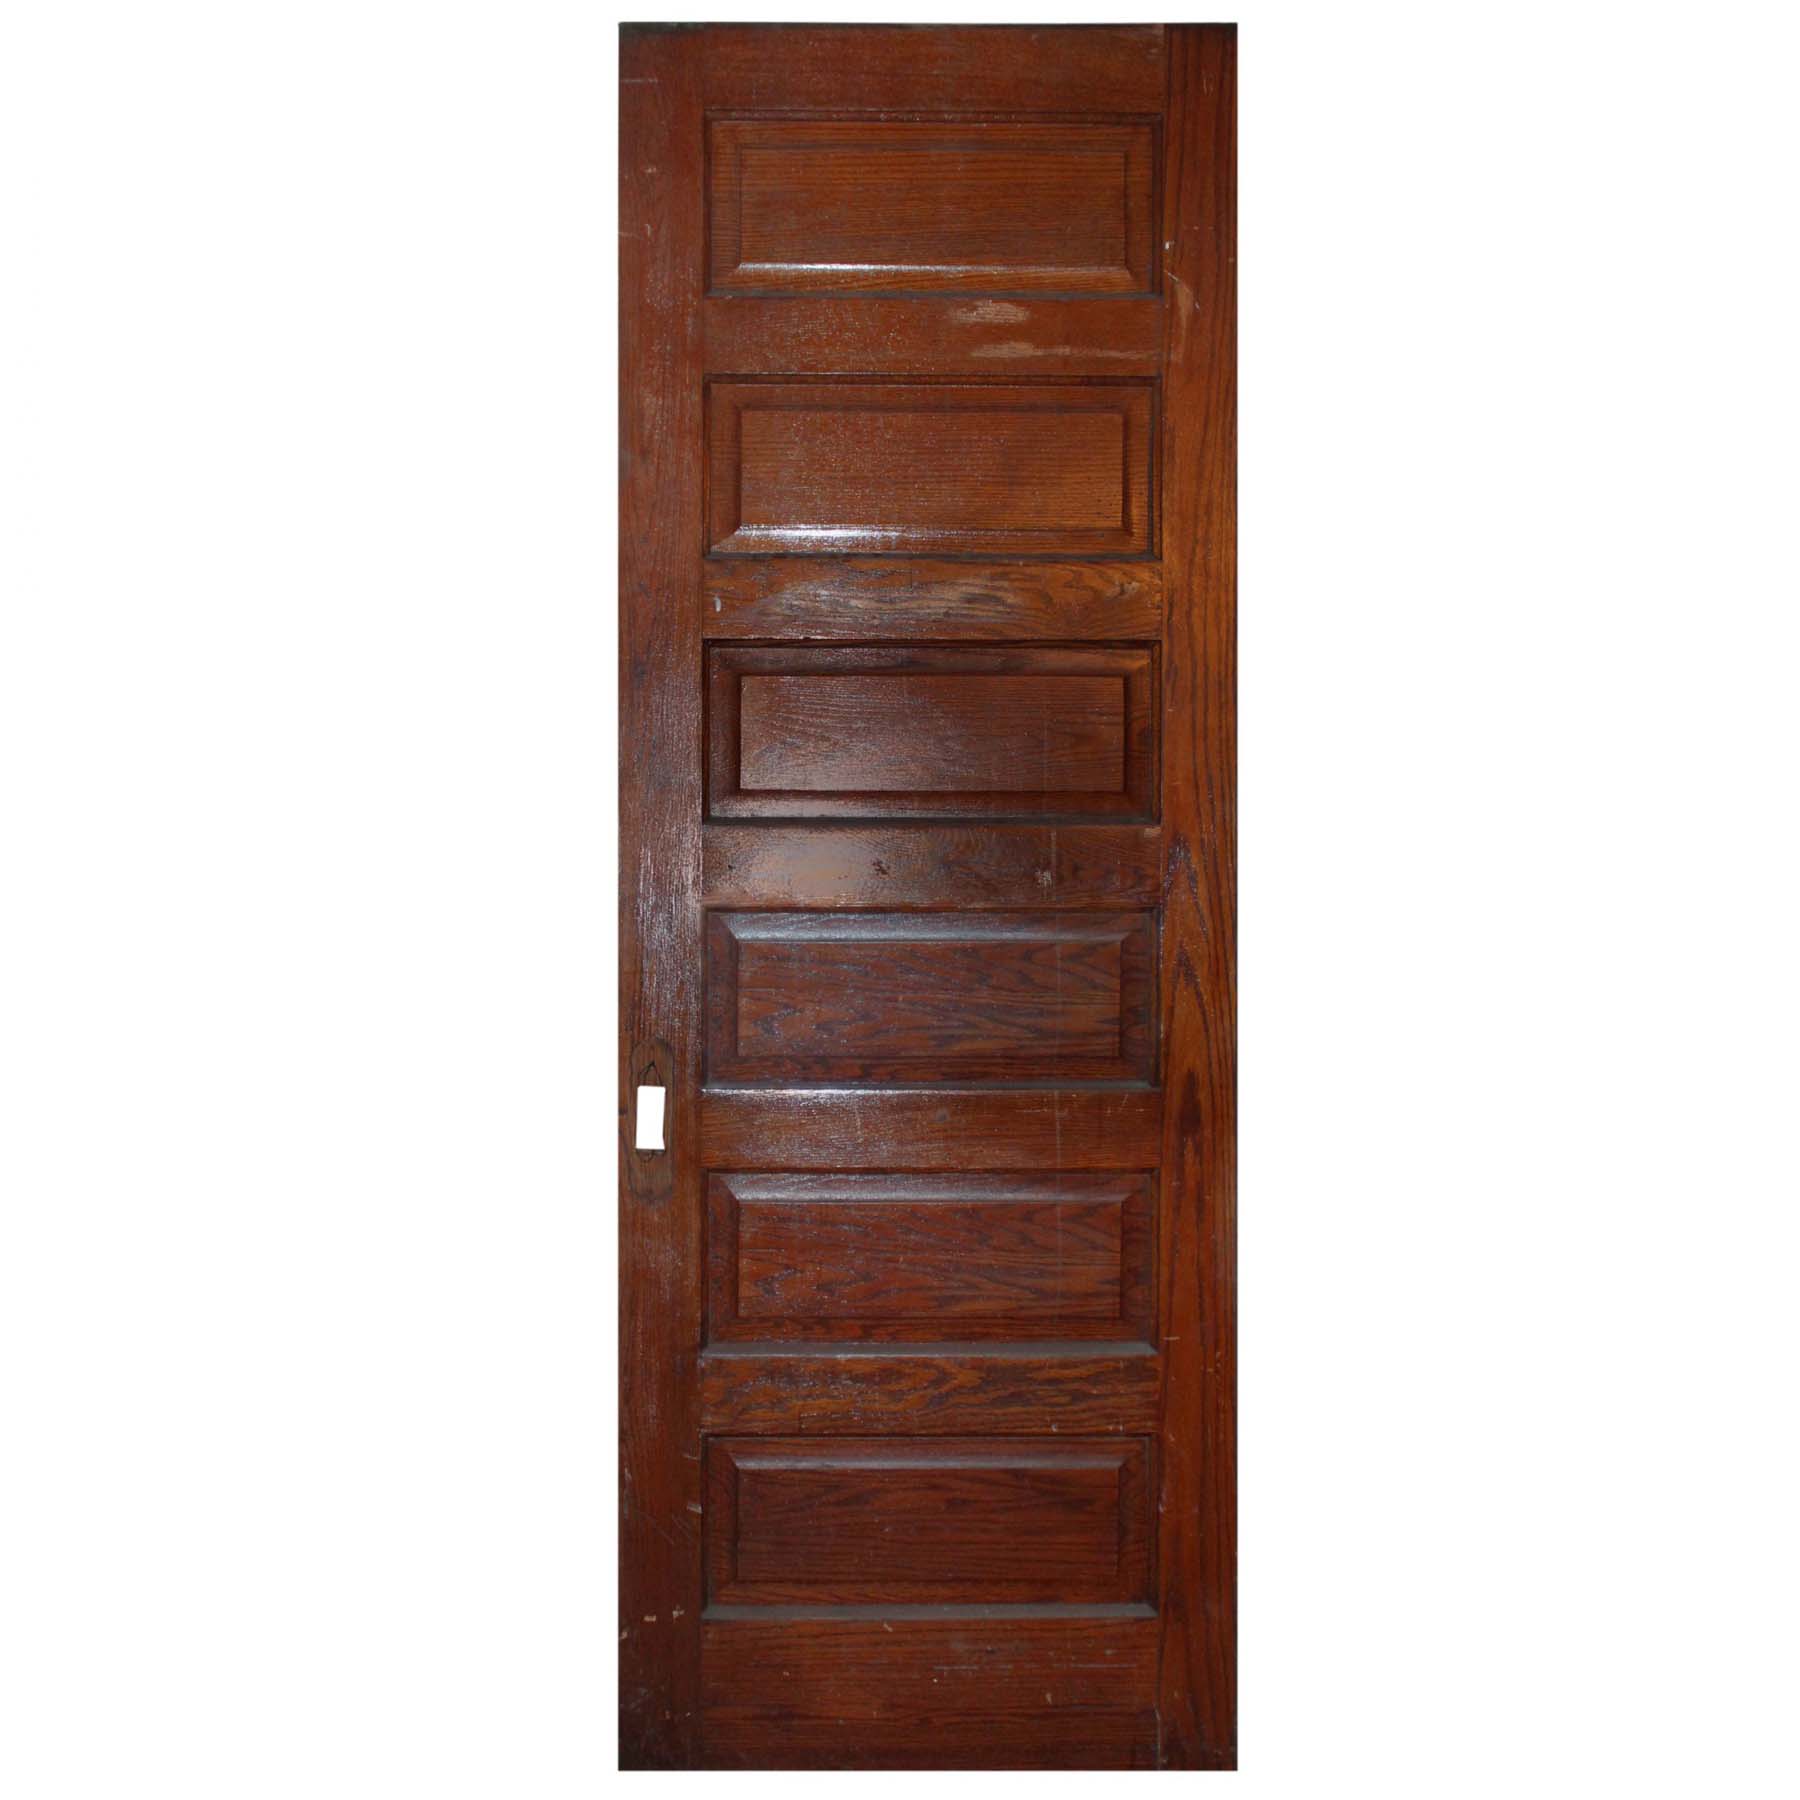 SOLD Antique 32” Oak Pocket Door-69021